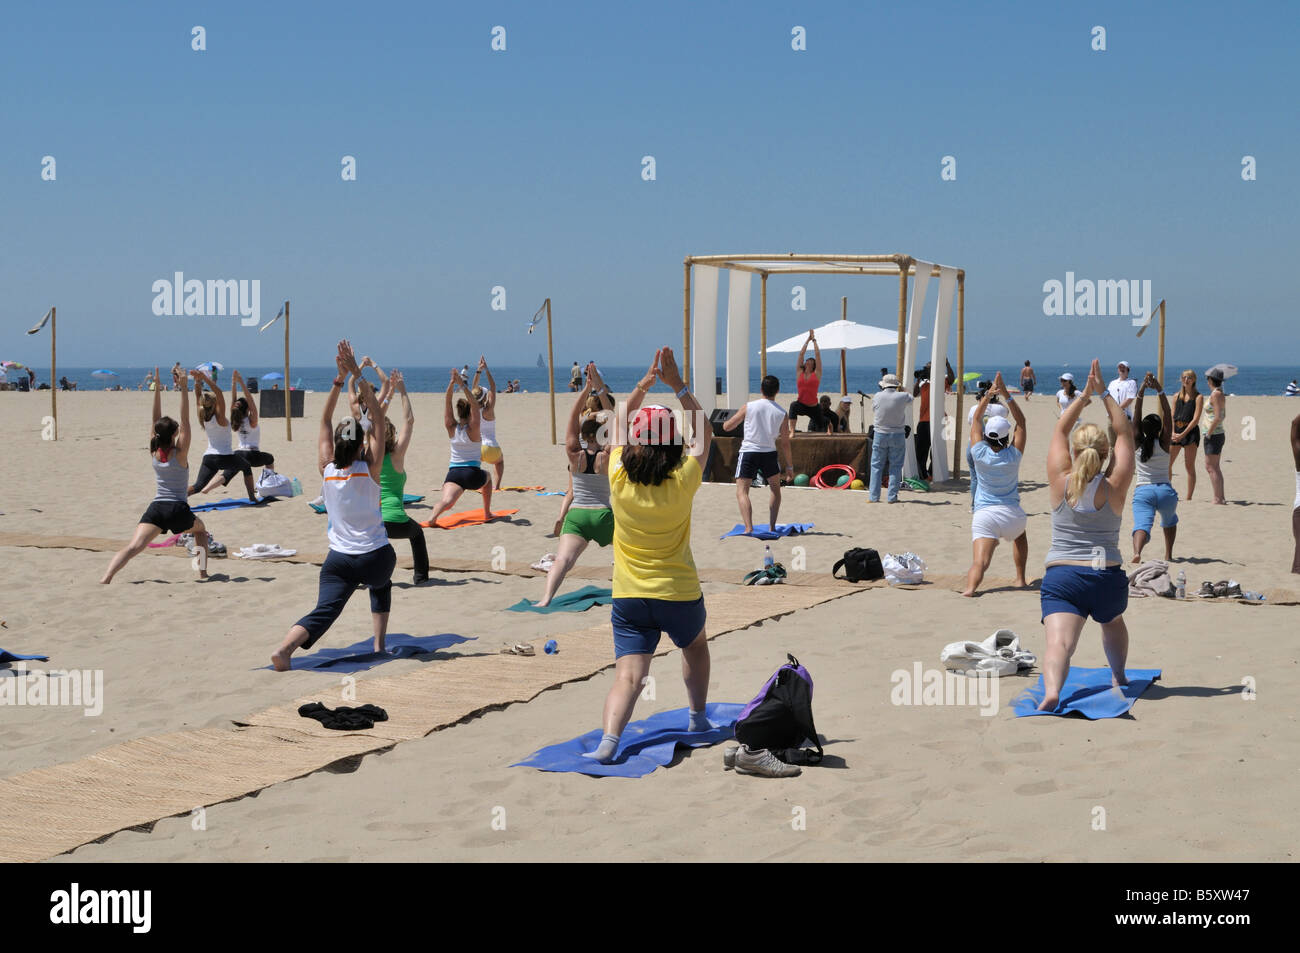 Une célébrité laden l'exercice et activité axée sur la santé a été organisé sur les plages de sable de la côte de Santa Monica Banque D'Images